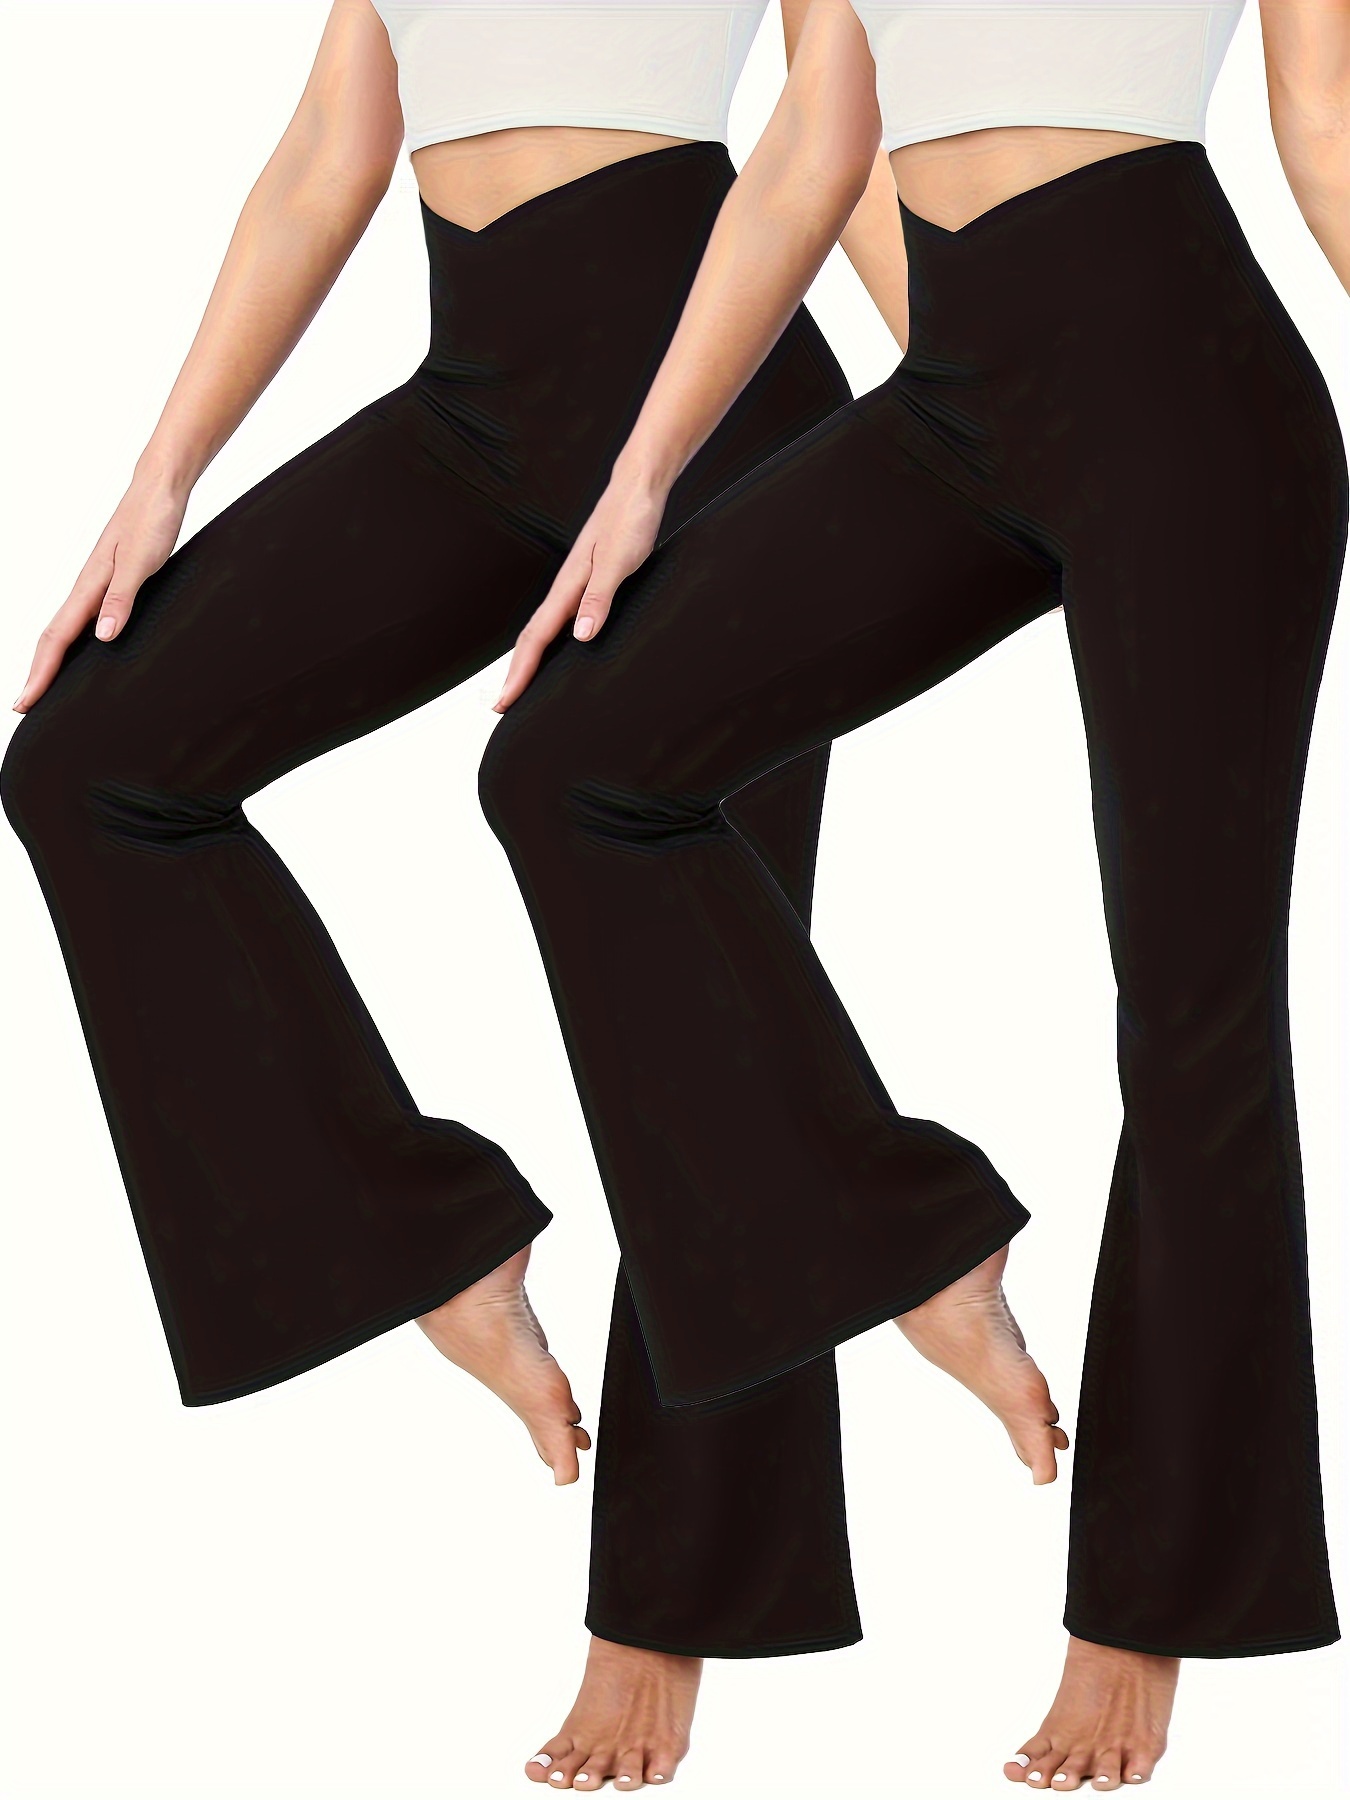 We Fleece Women's Casual Bootleg Yoga Pants - Flare Leggings for Women High  Waisted V Crossover Workout Pants - China Pants and Workout Pants price